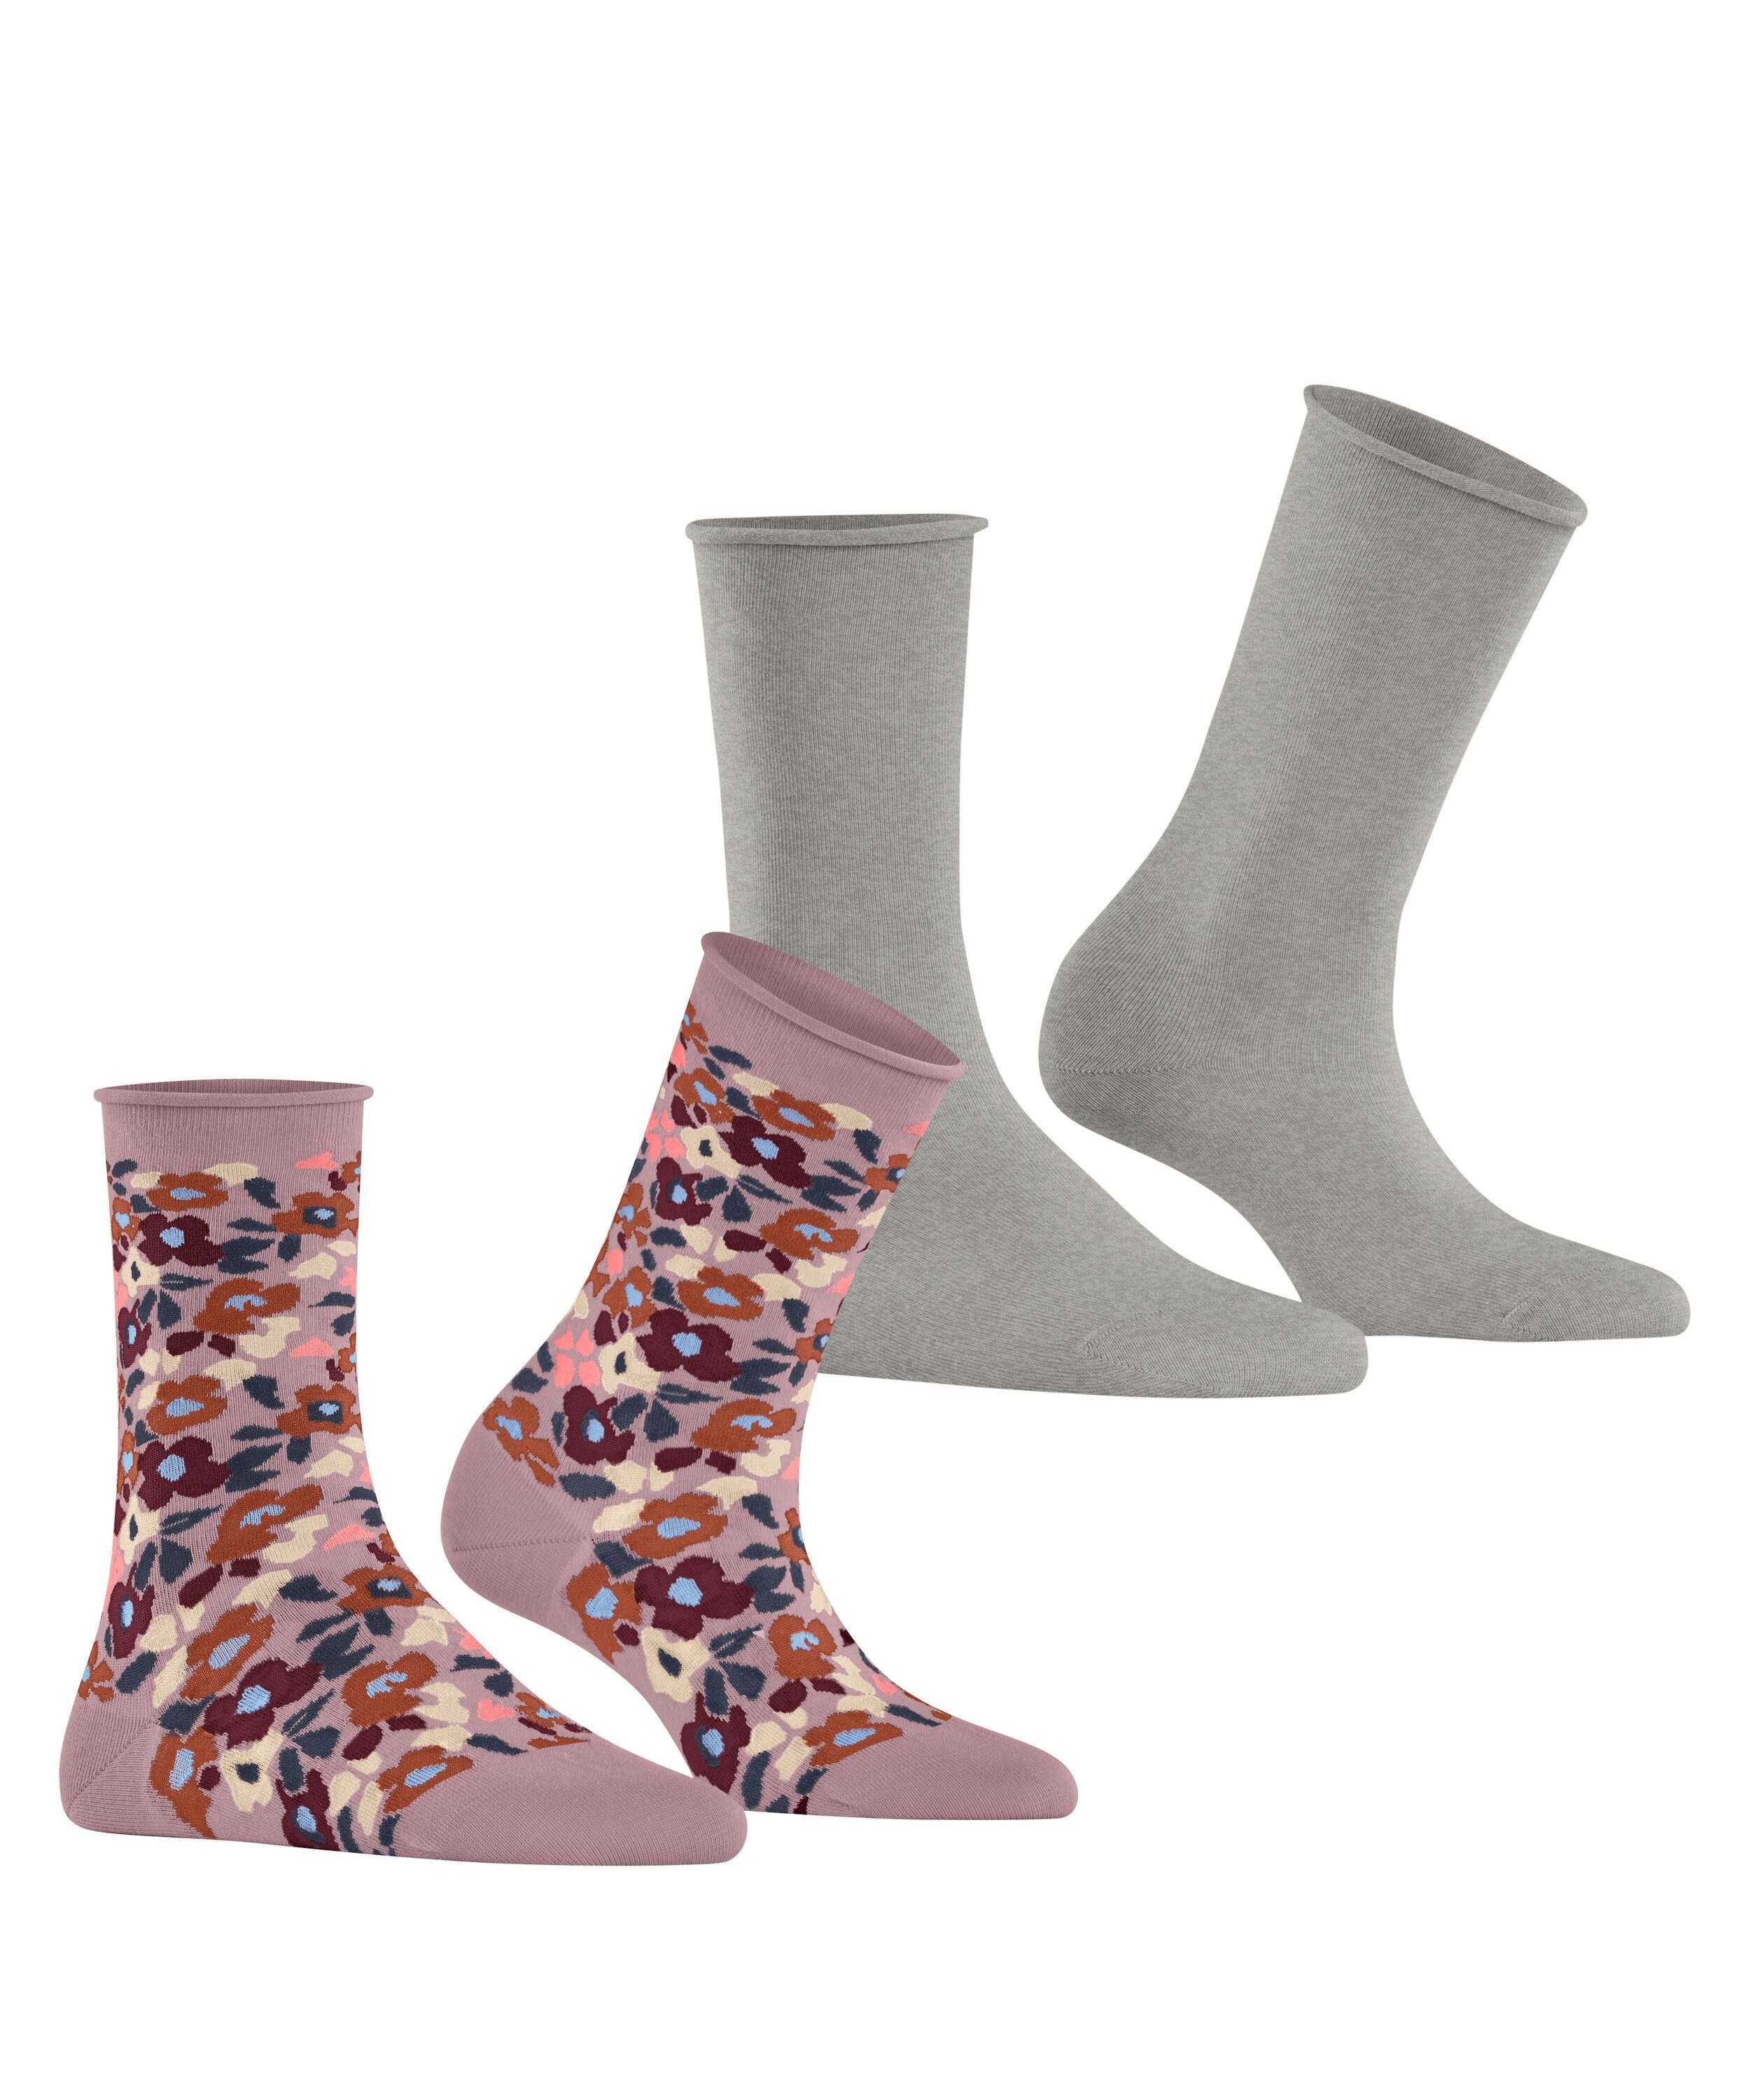 Me Socken Simply Flower 2-Pack (2-Paar) Esprit (0010) sortiment